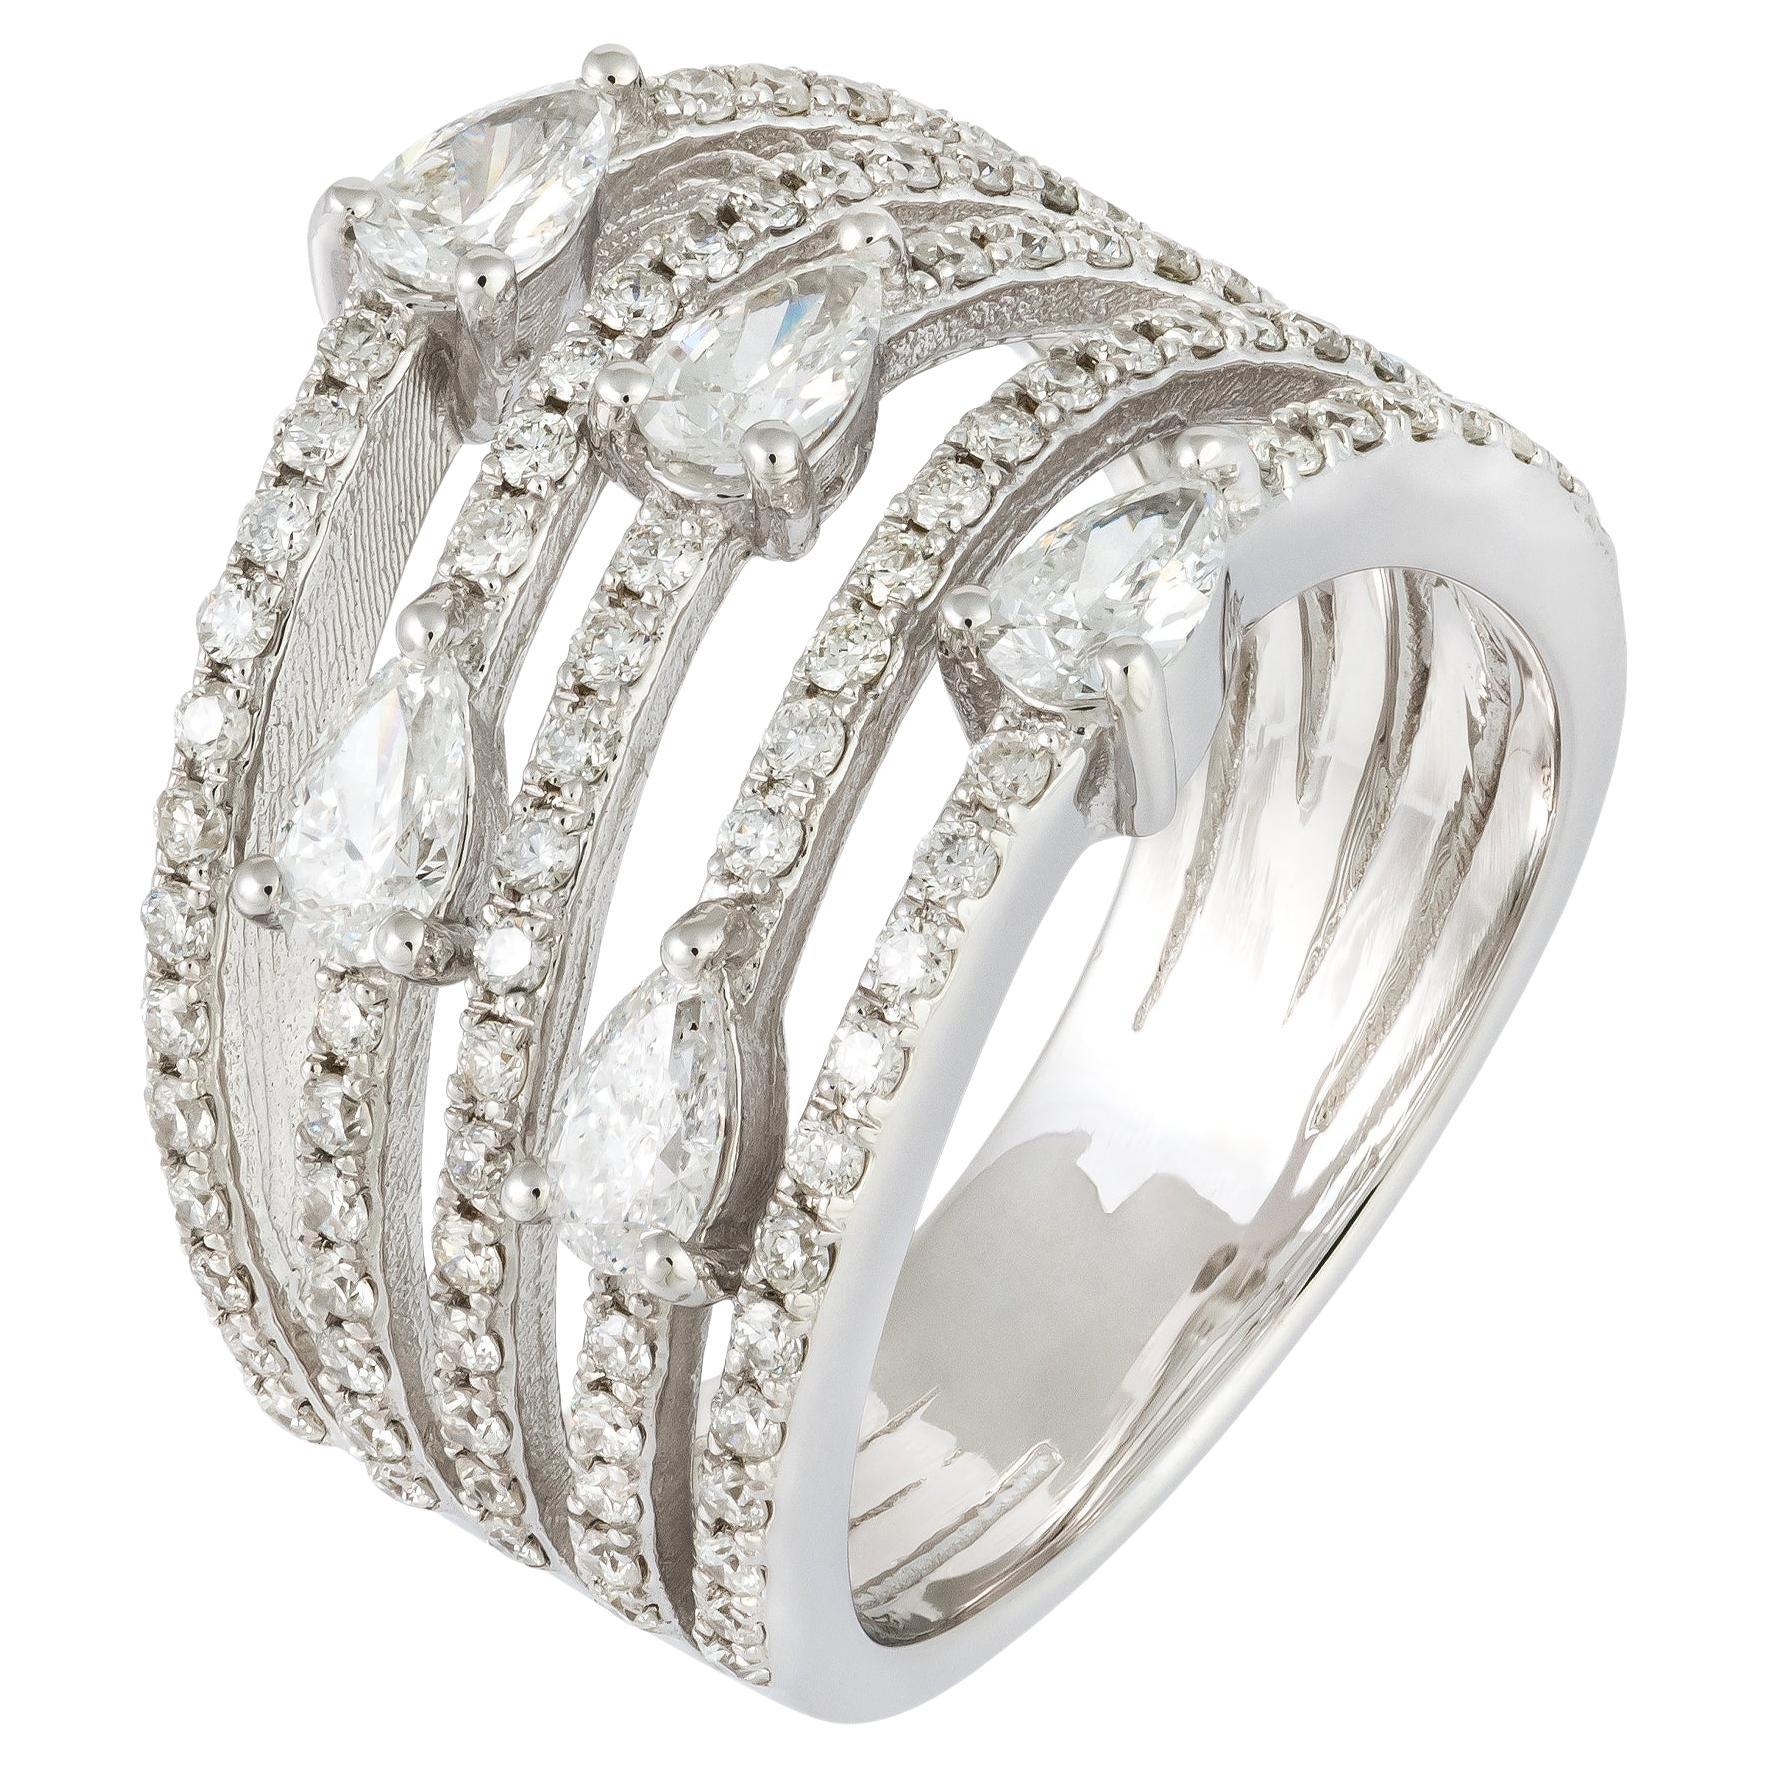 Atemberaubender Ring aus weißem 18 Karat Gold mit weißen Diamanten für sie